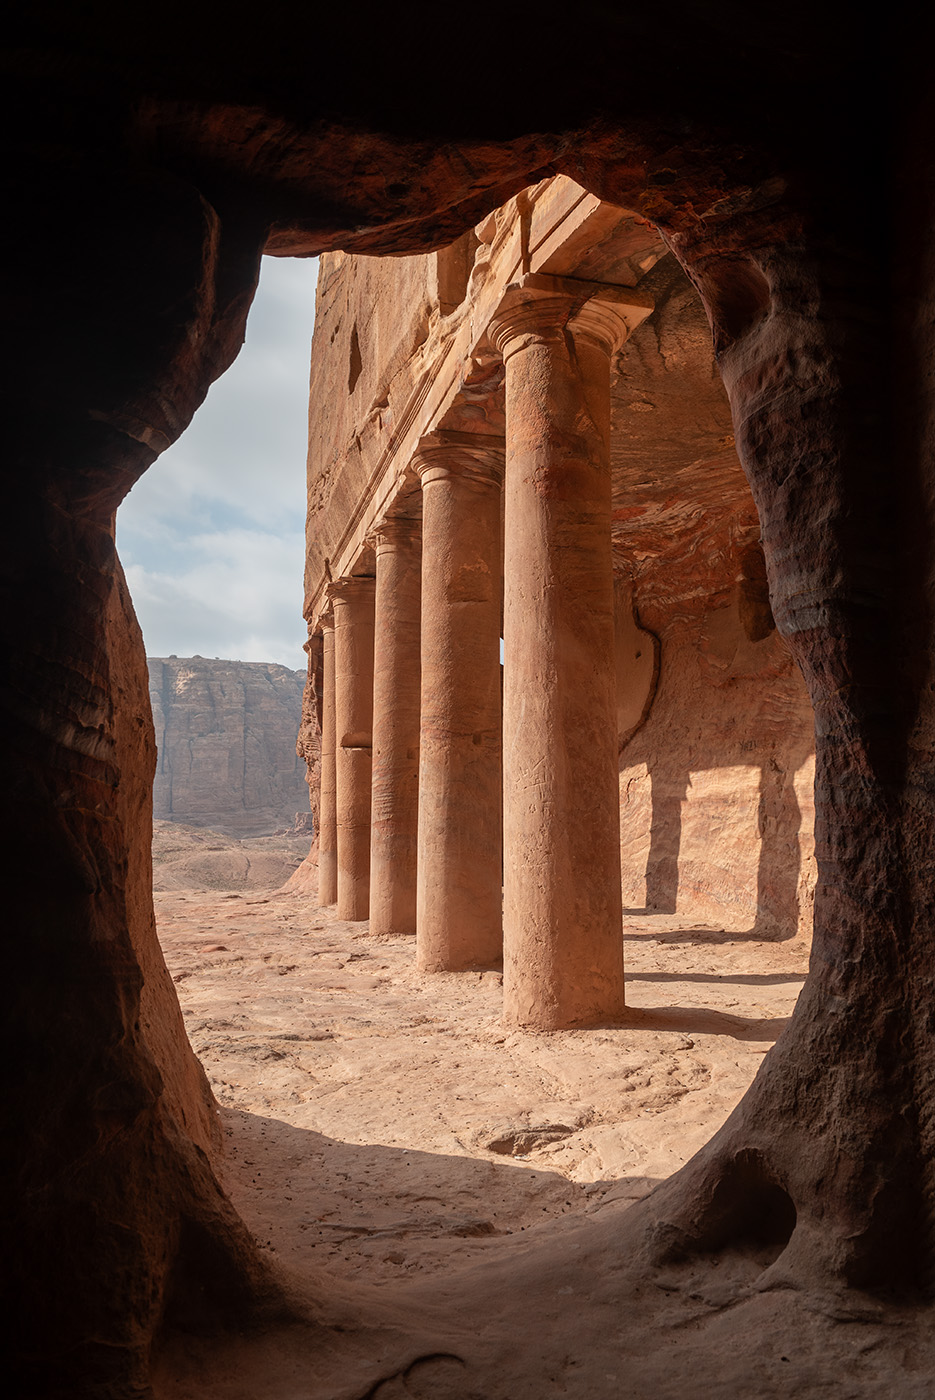 Pillars at Petra shot through a portal